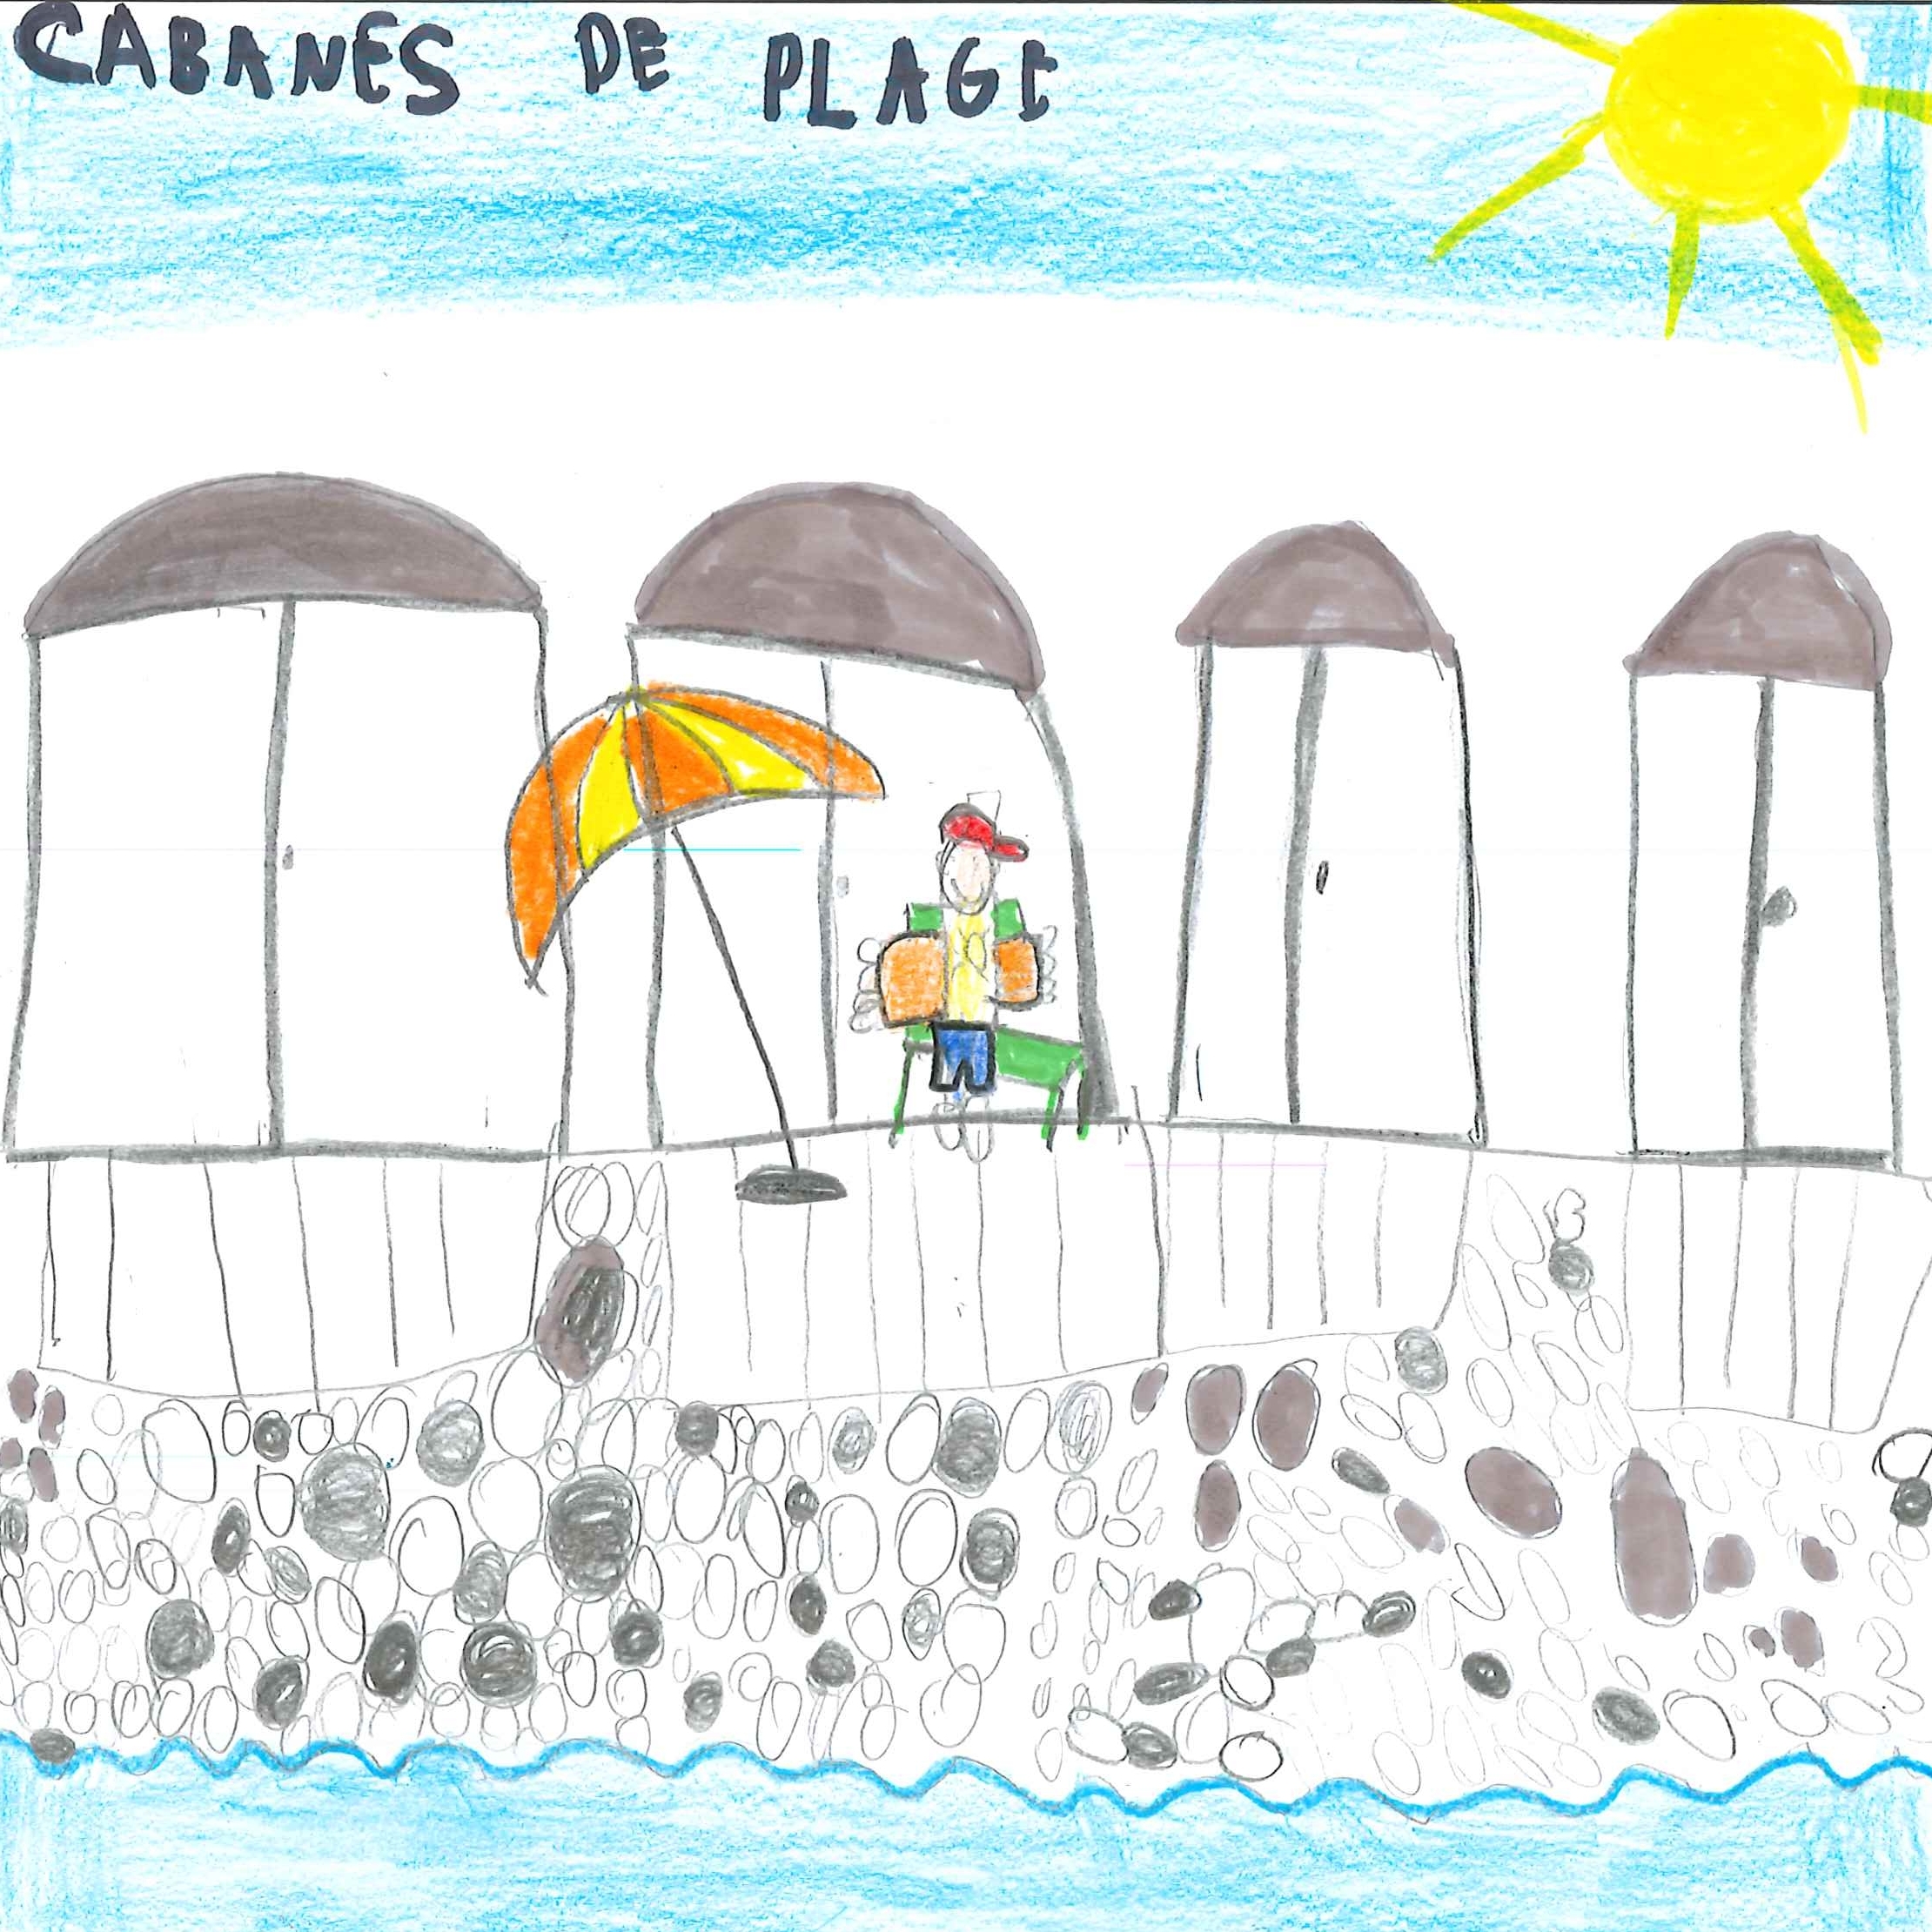 Dessin de Mila (6 ans). Mot: Cabane de plageTechnique: Crayons.